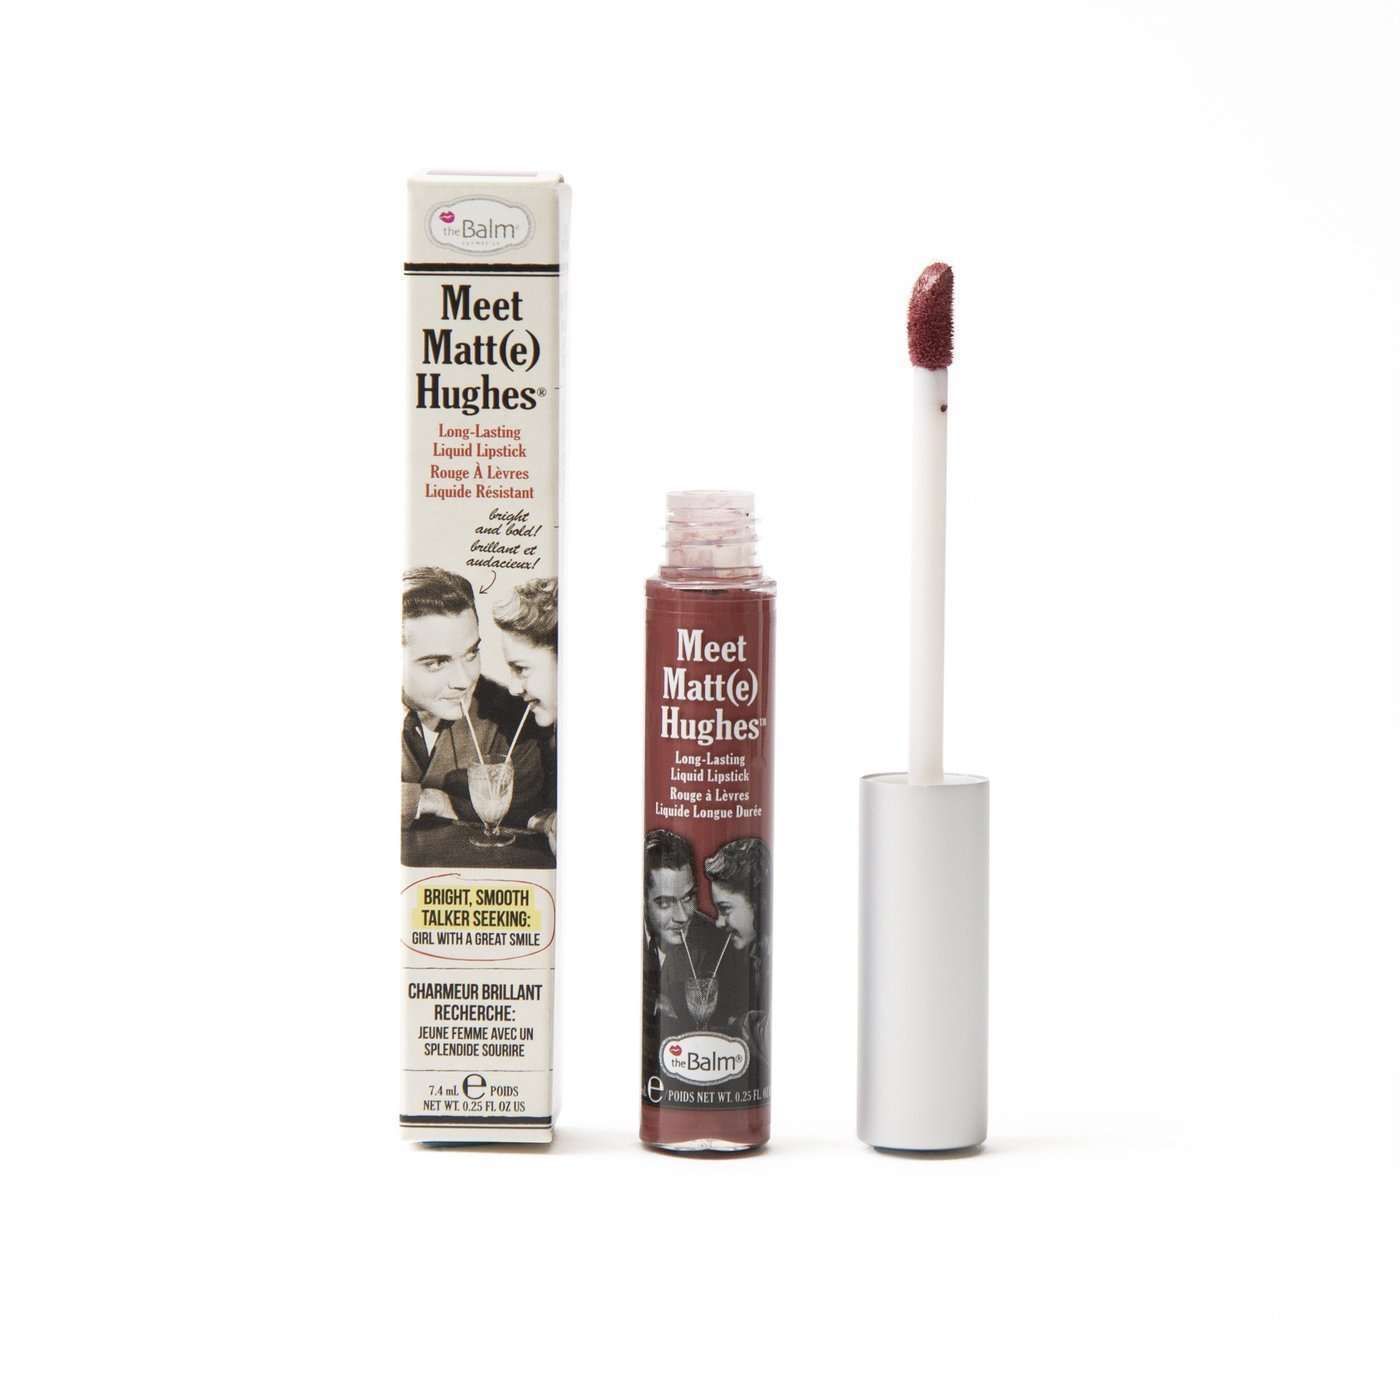 The Balm Cosmetics Meet Matte(e) Hughes Liquid LipstickCharmingorabelca